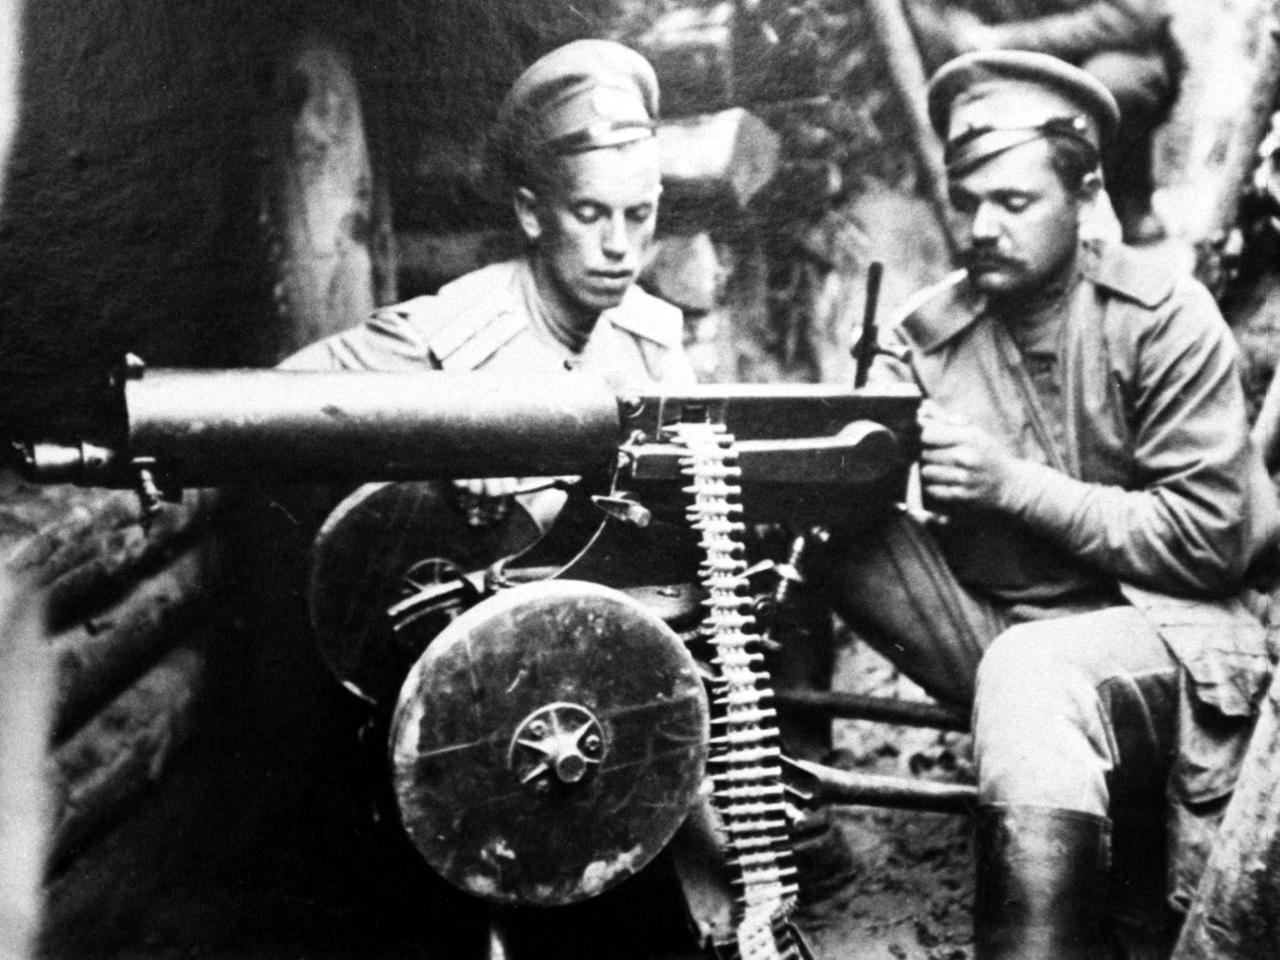 Das Bild zeigt russische Soldaten mit einem Maschinengewehr.